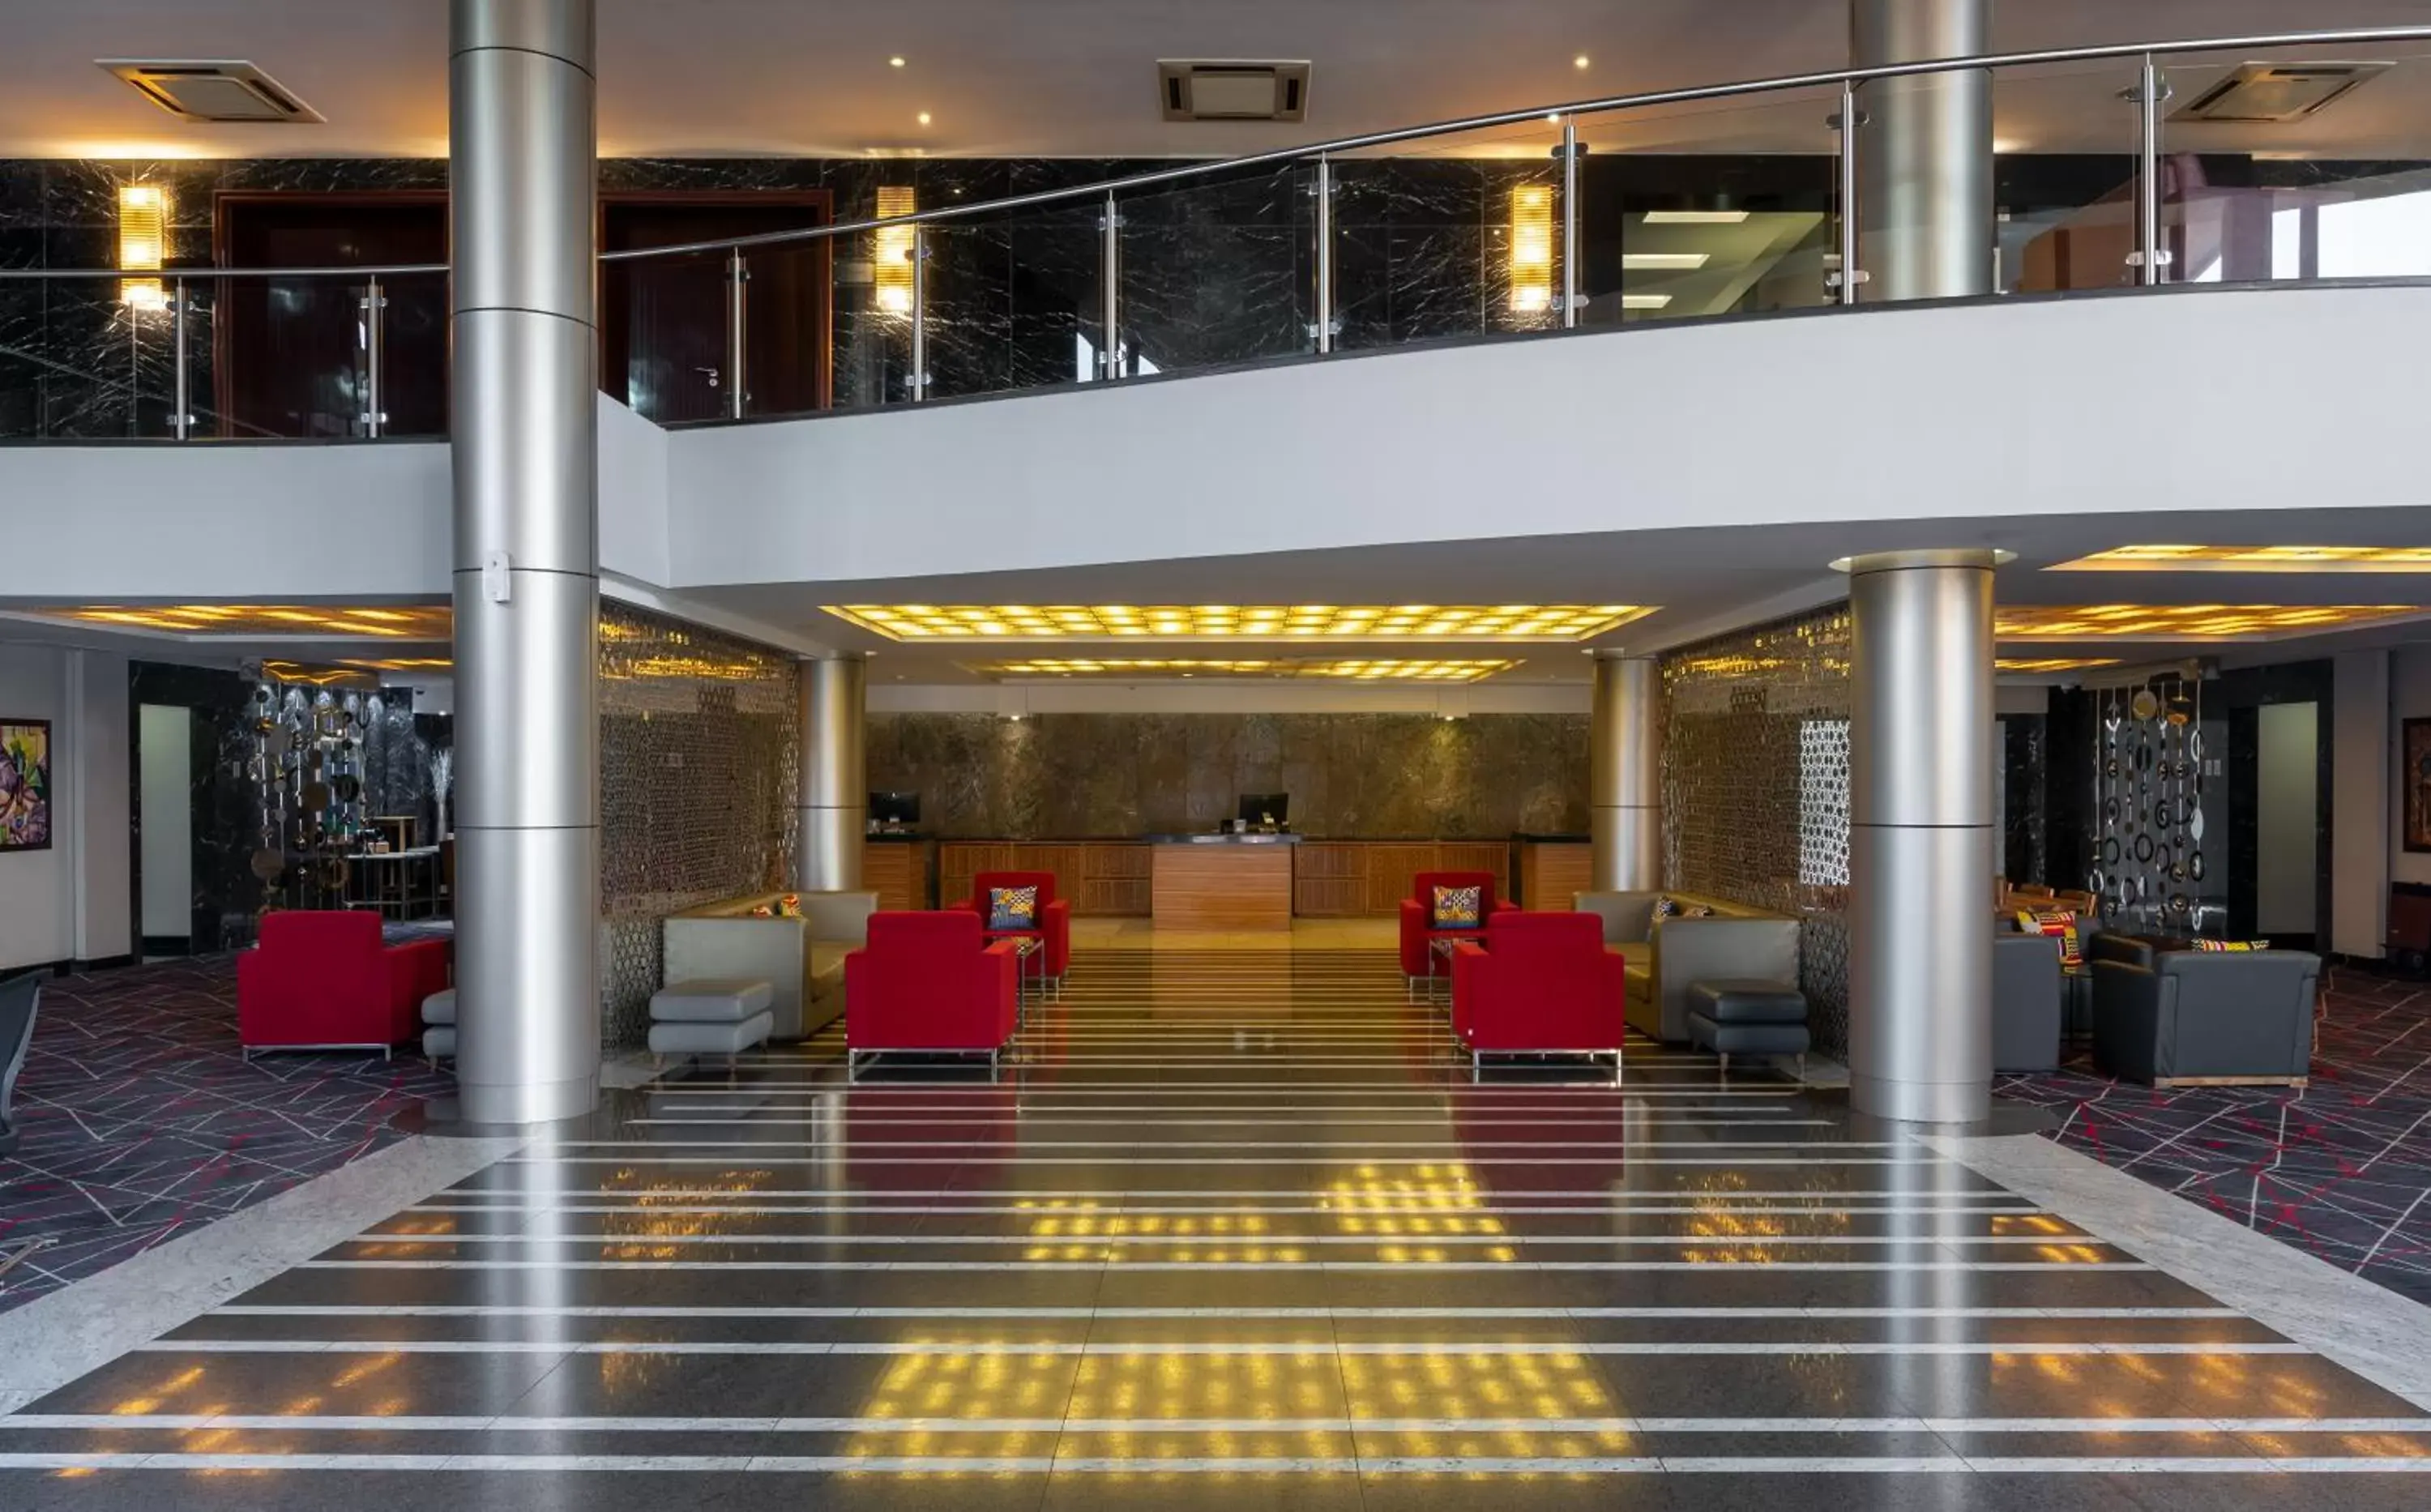 Lobby or reception in Radisson Blu Hotel Lusaka